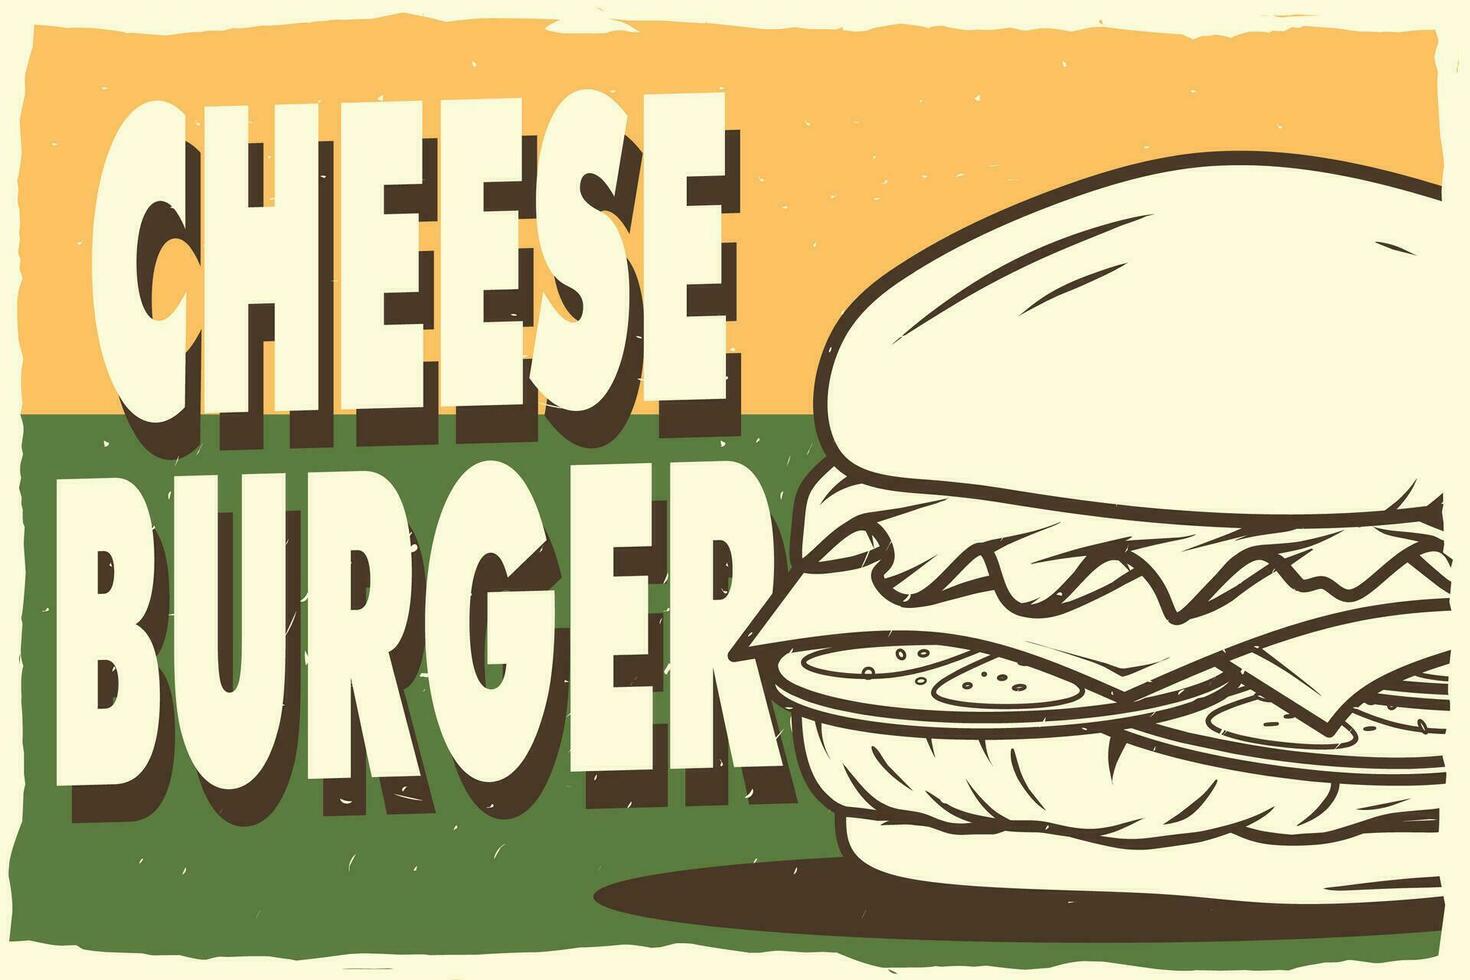 cheeseburger retro poster for print vector